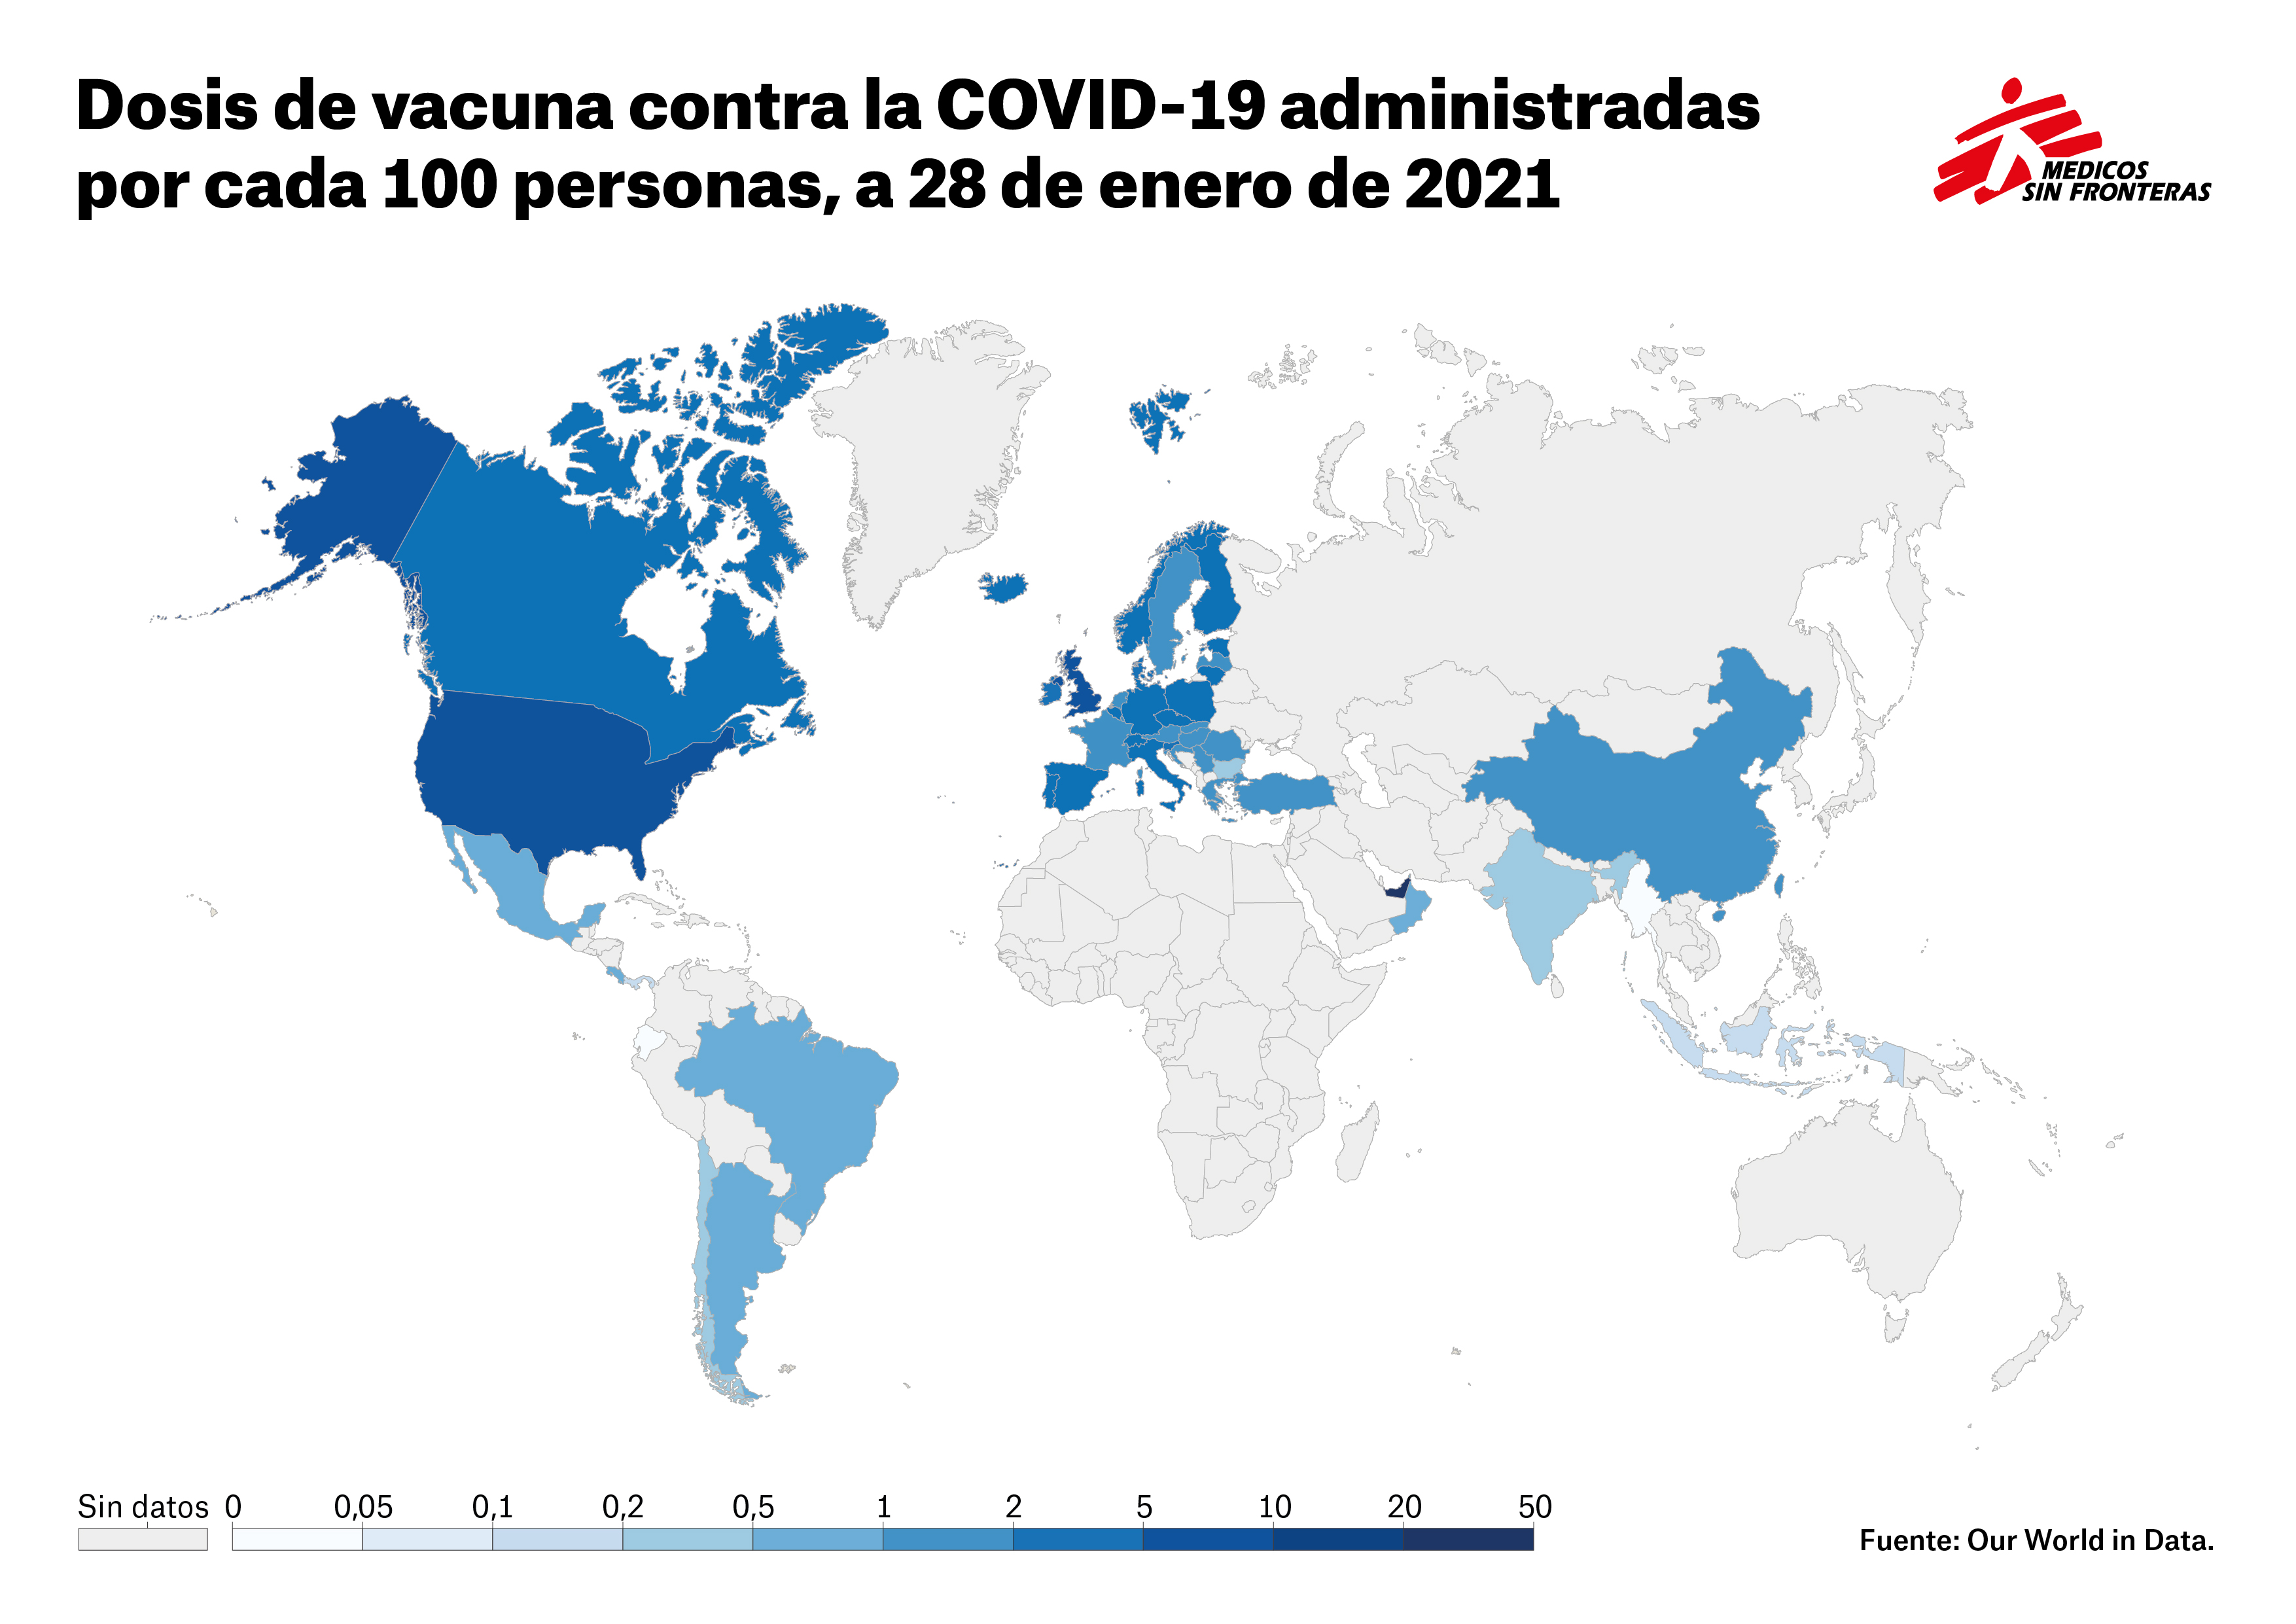 Dosis de vacuna contra la COVID-19 administradas por cada 100 habitantes. Fuente: Our World in Data